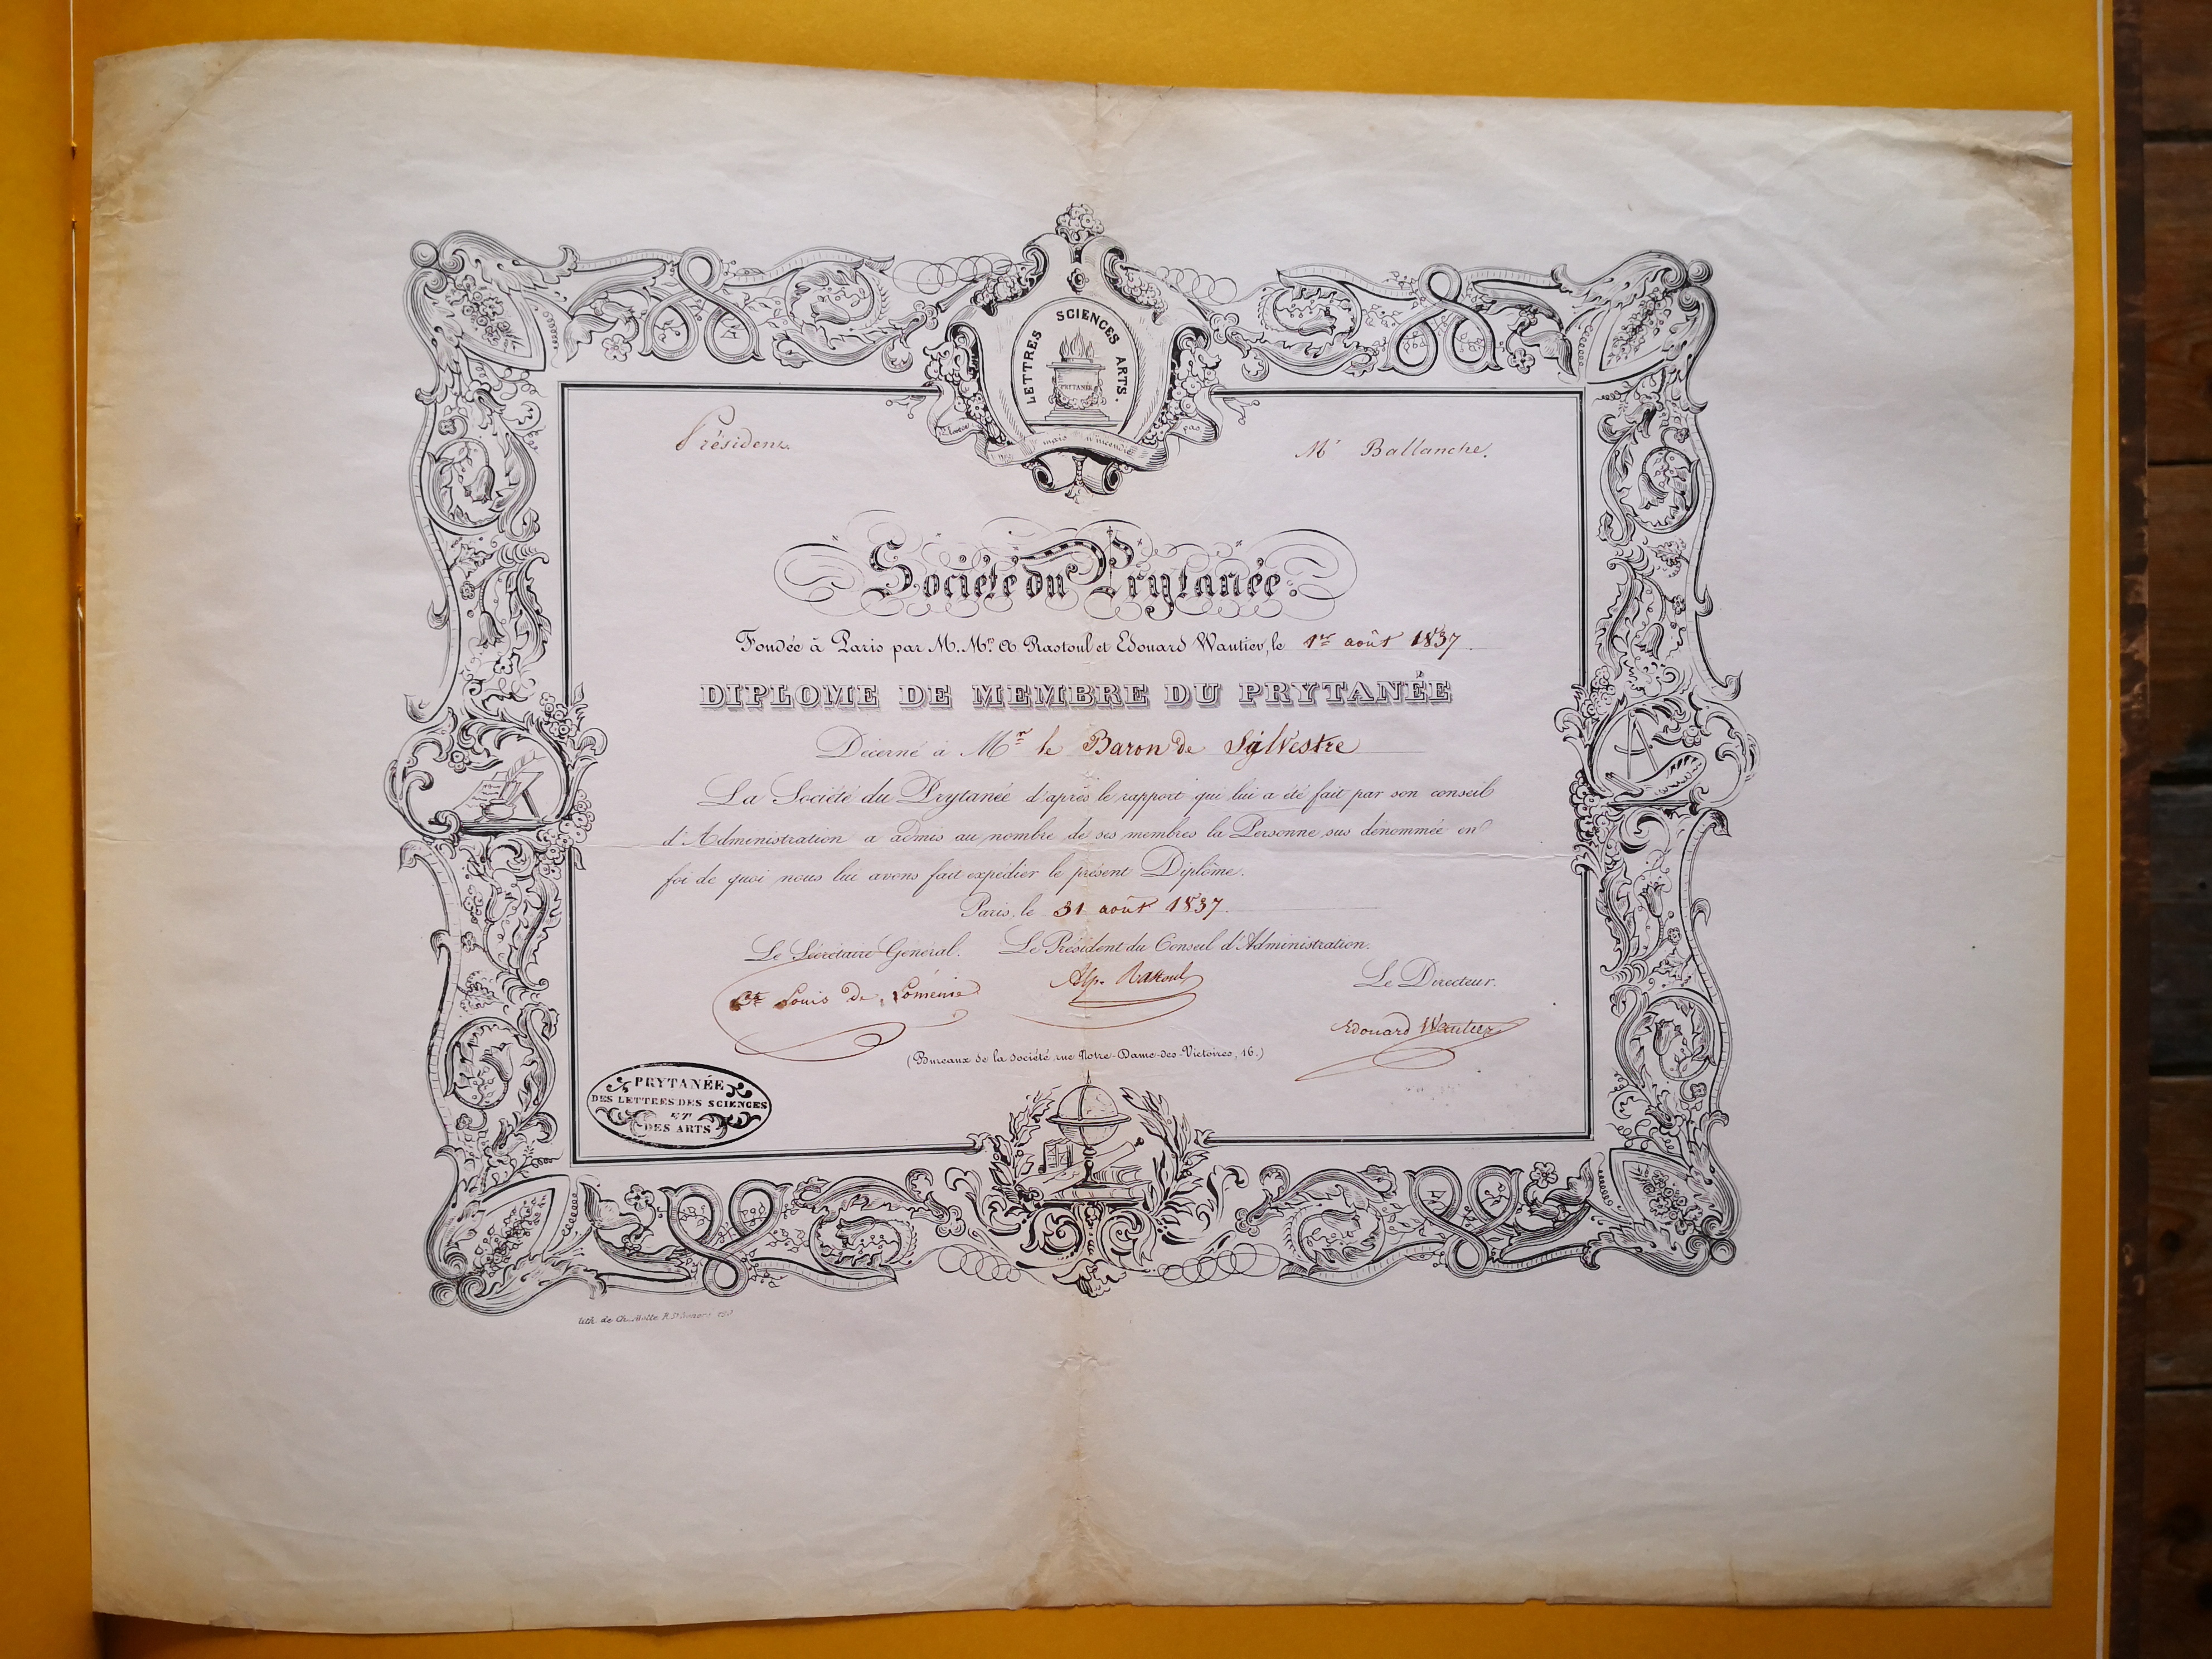  Diplôme de membre du Prytanée des lettres des sciences et des arts décerné à Augustin-François de Silvestre - Document 1